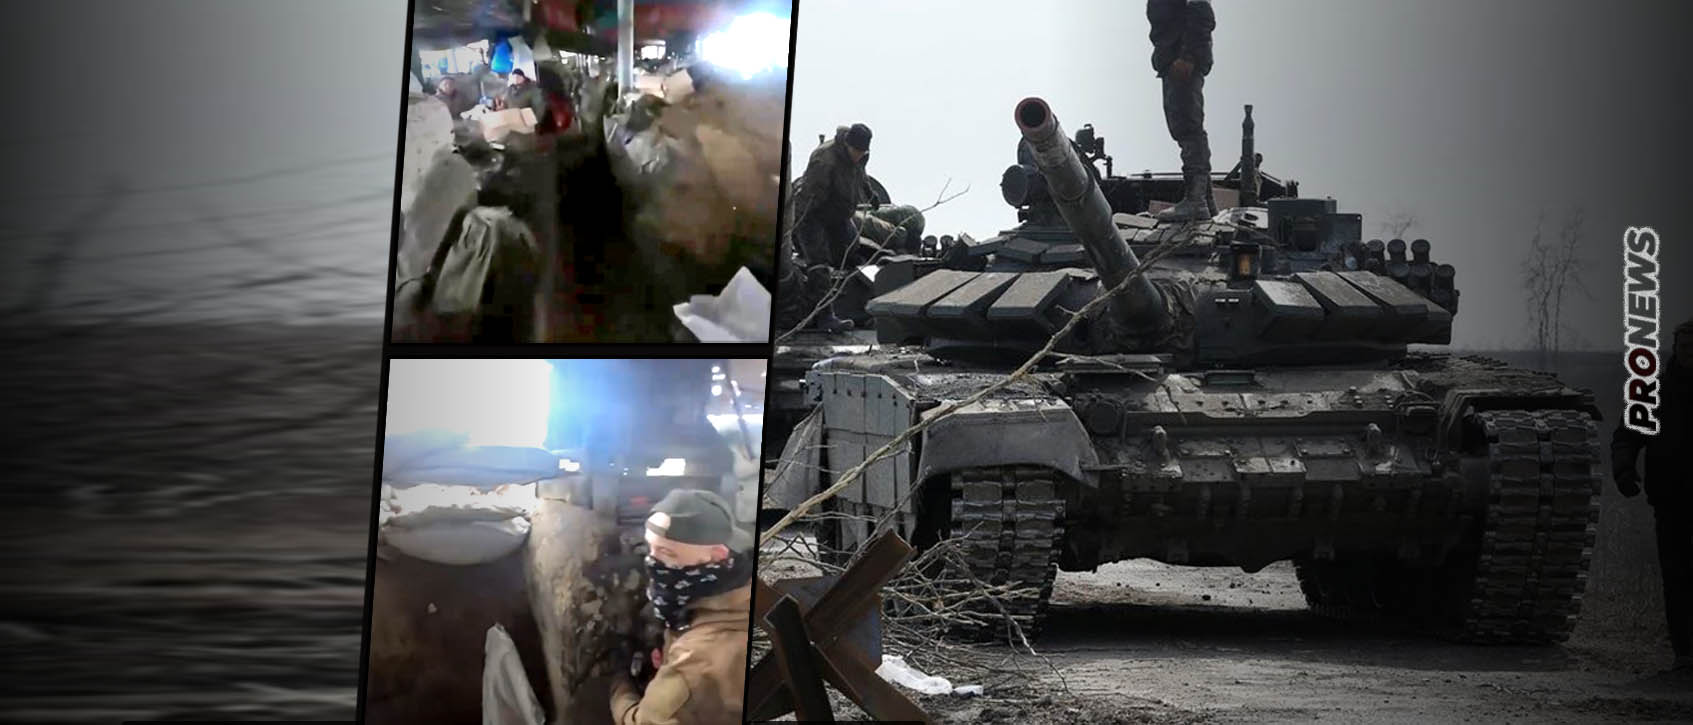 Ουκρανία: Επανεμφάνιση των Τσετσένων στο μέτωπο – Κατέλαβαν σταθμό ανεφοδιασμού στο Σπίρνε – Ήταν βαριά οχυρωμένος